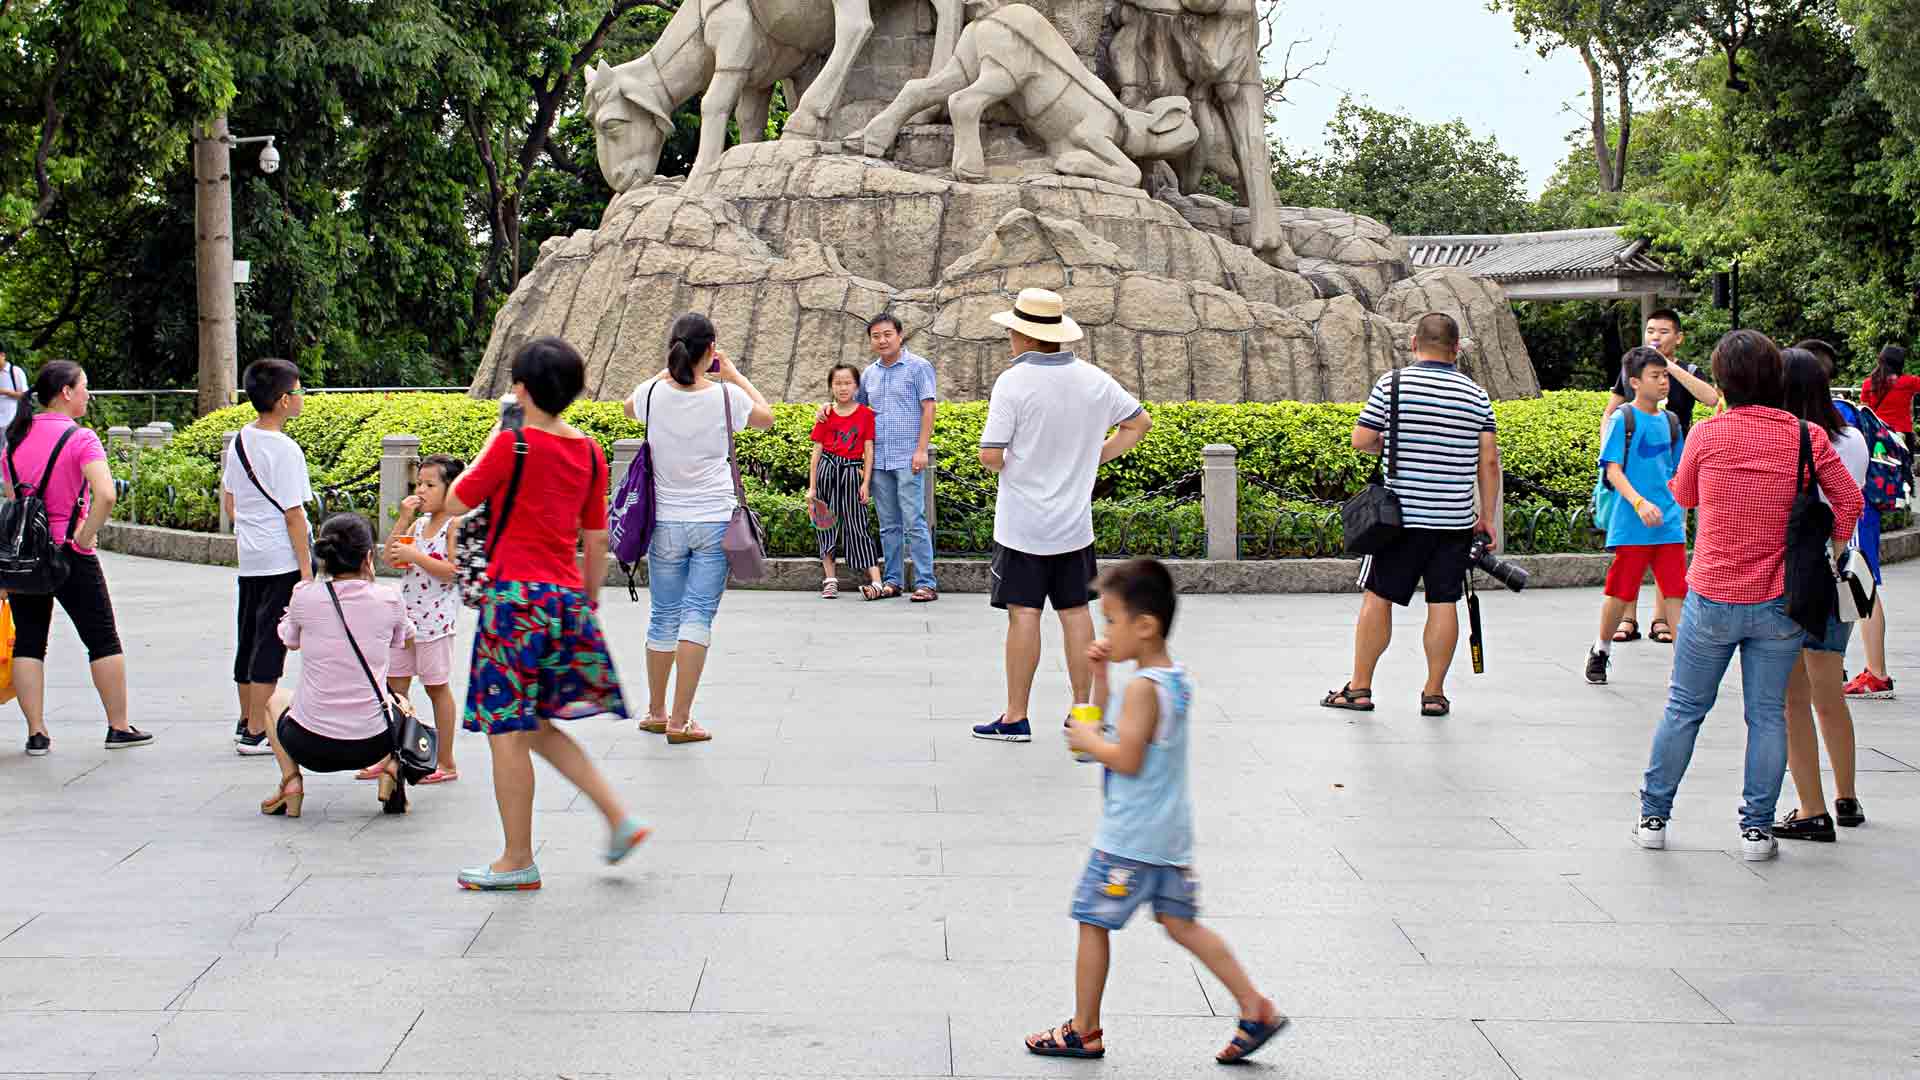 Yuexiu-puiston vetonaula, viittä vuohta kuvaava Statue of Five Rams -veistos on Kantonin symboli.